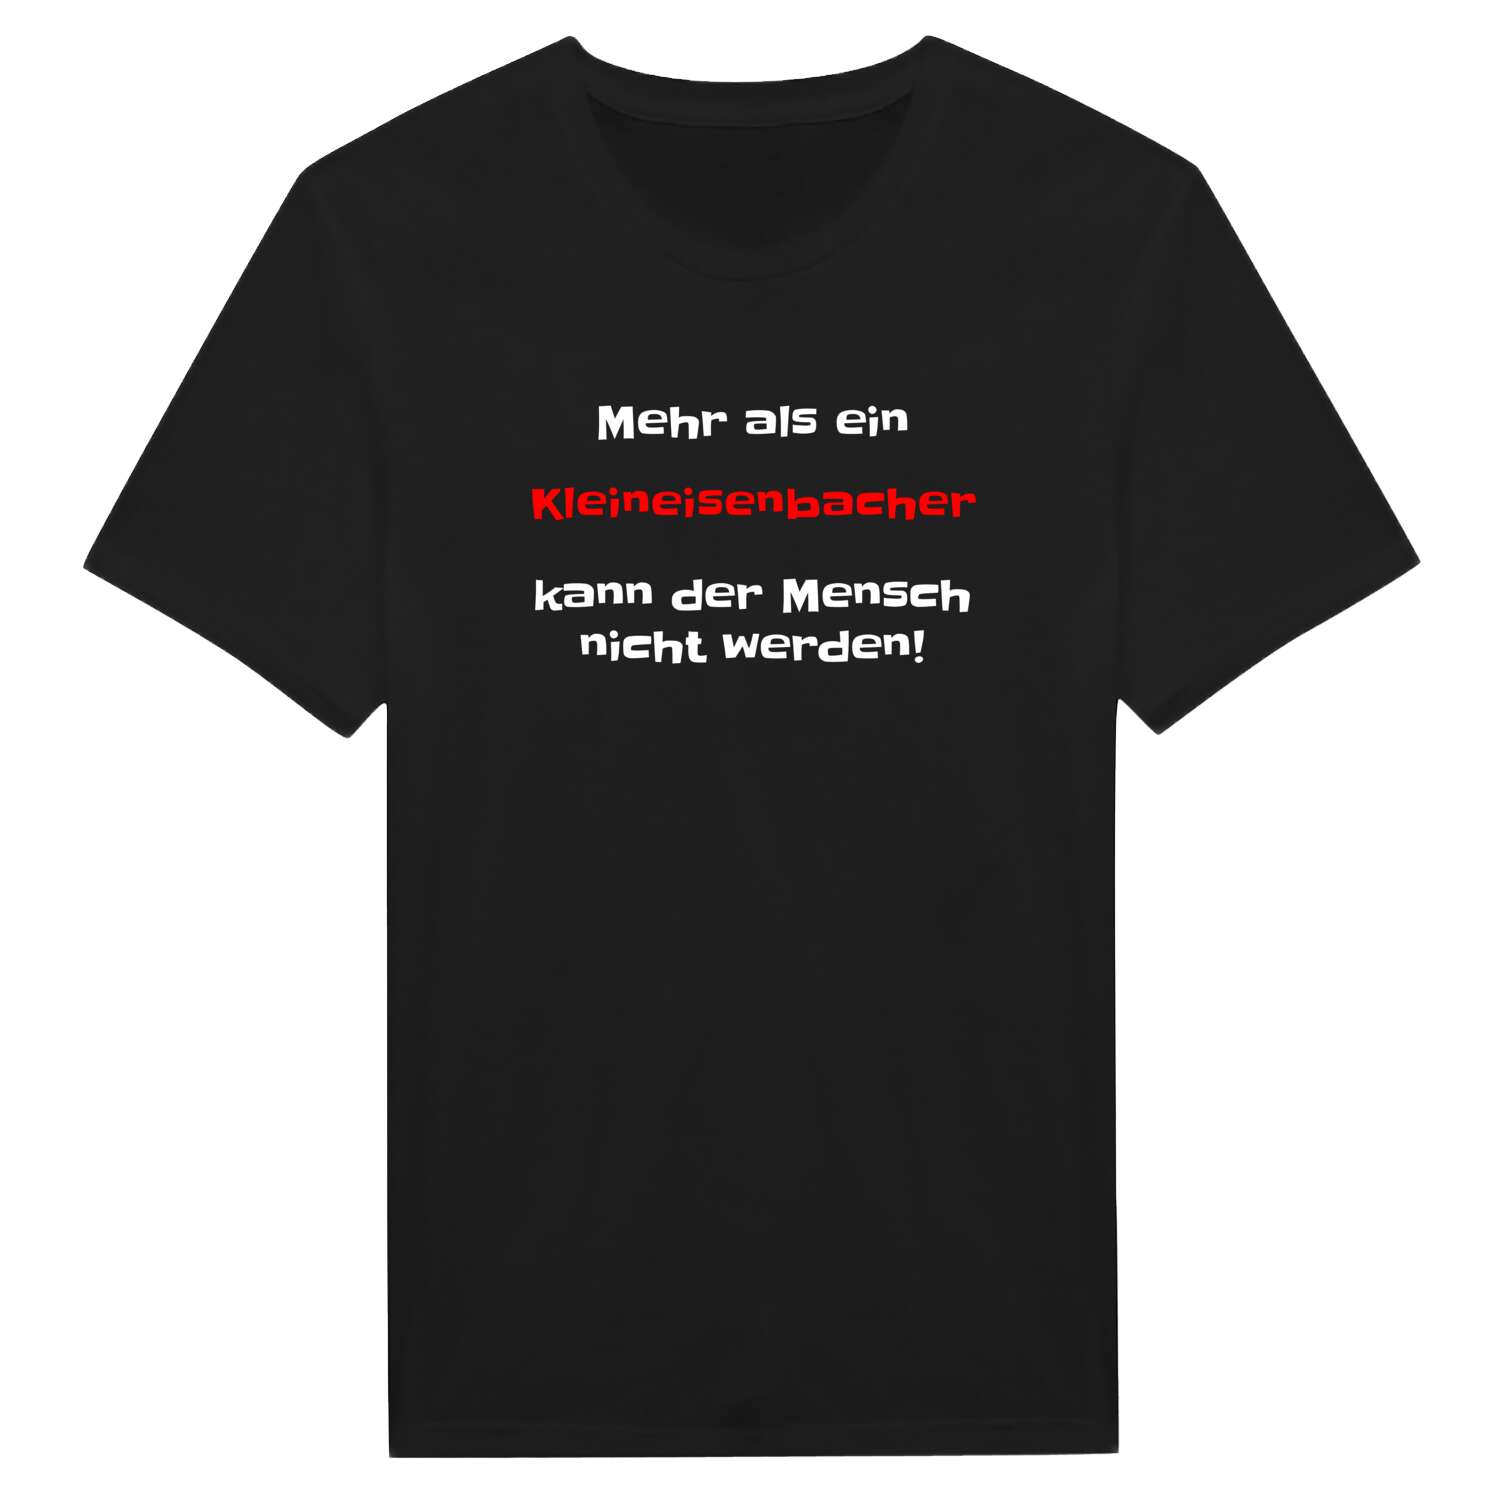 Kleineisenbach T-Shirt »Mehr als ein«